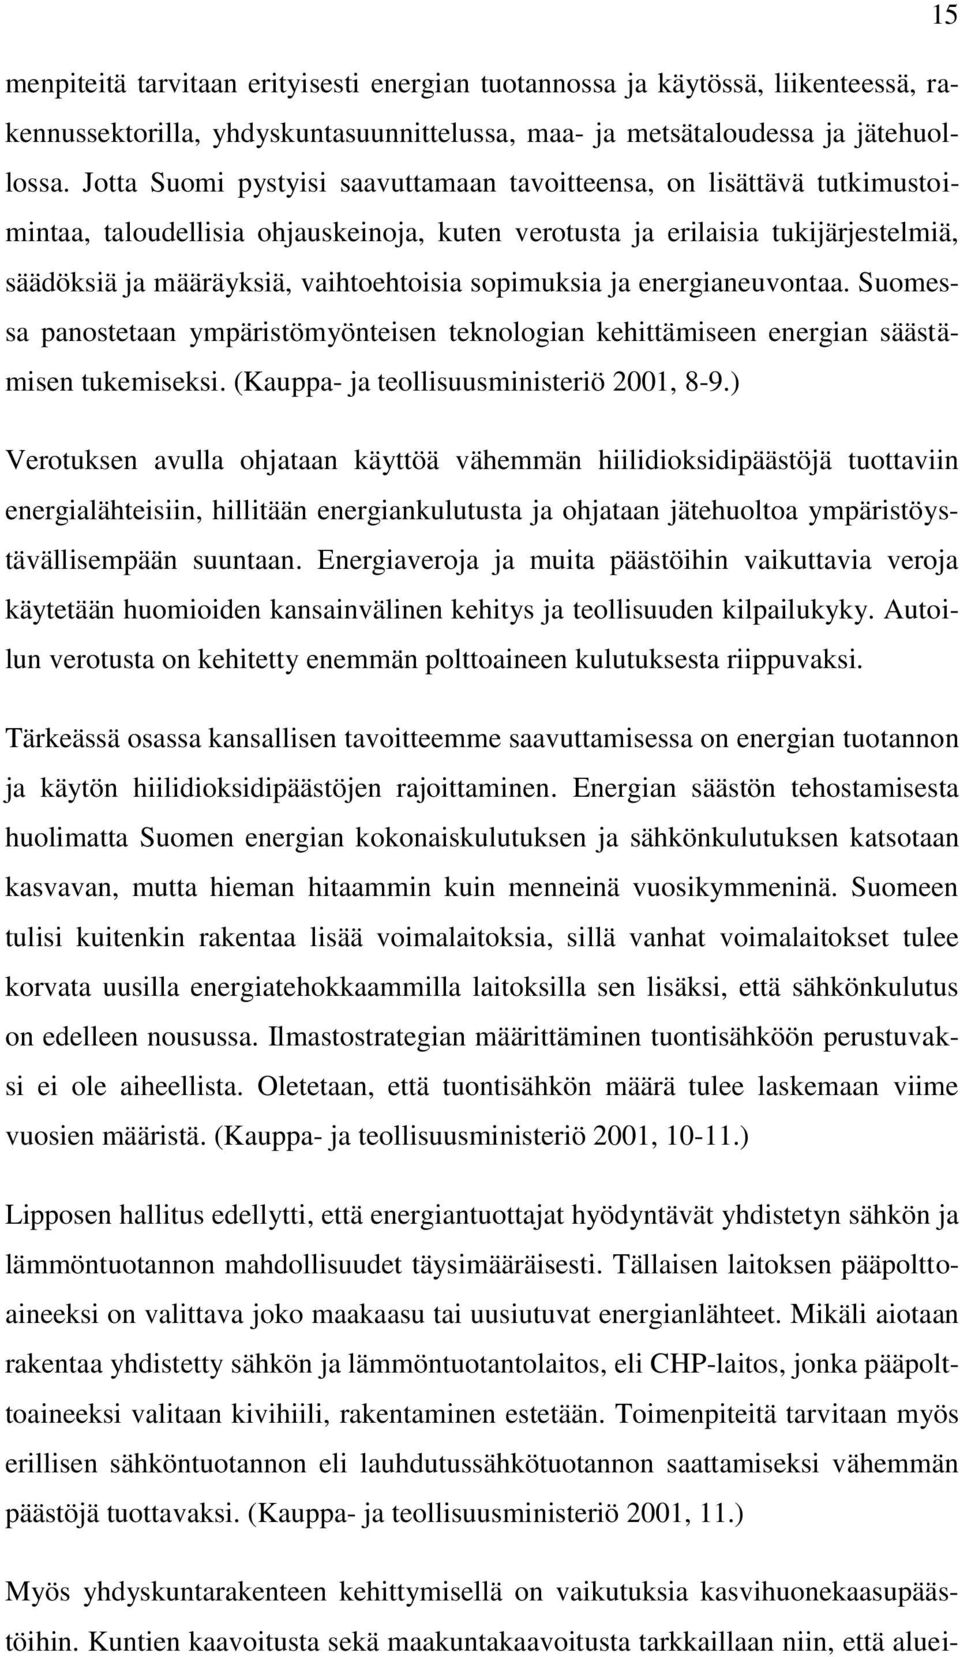 sopimuksia ja energianeuvontaa. Suomessa panostetaan ympäristömyönteisen teknologian kehittämiseen energian säästämisen tukemiseksi. (Kauppa- ja teollisuusministeriö 2001, 8-9.